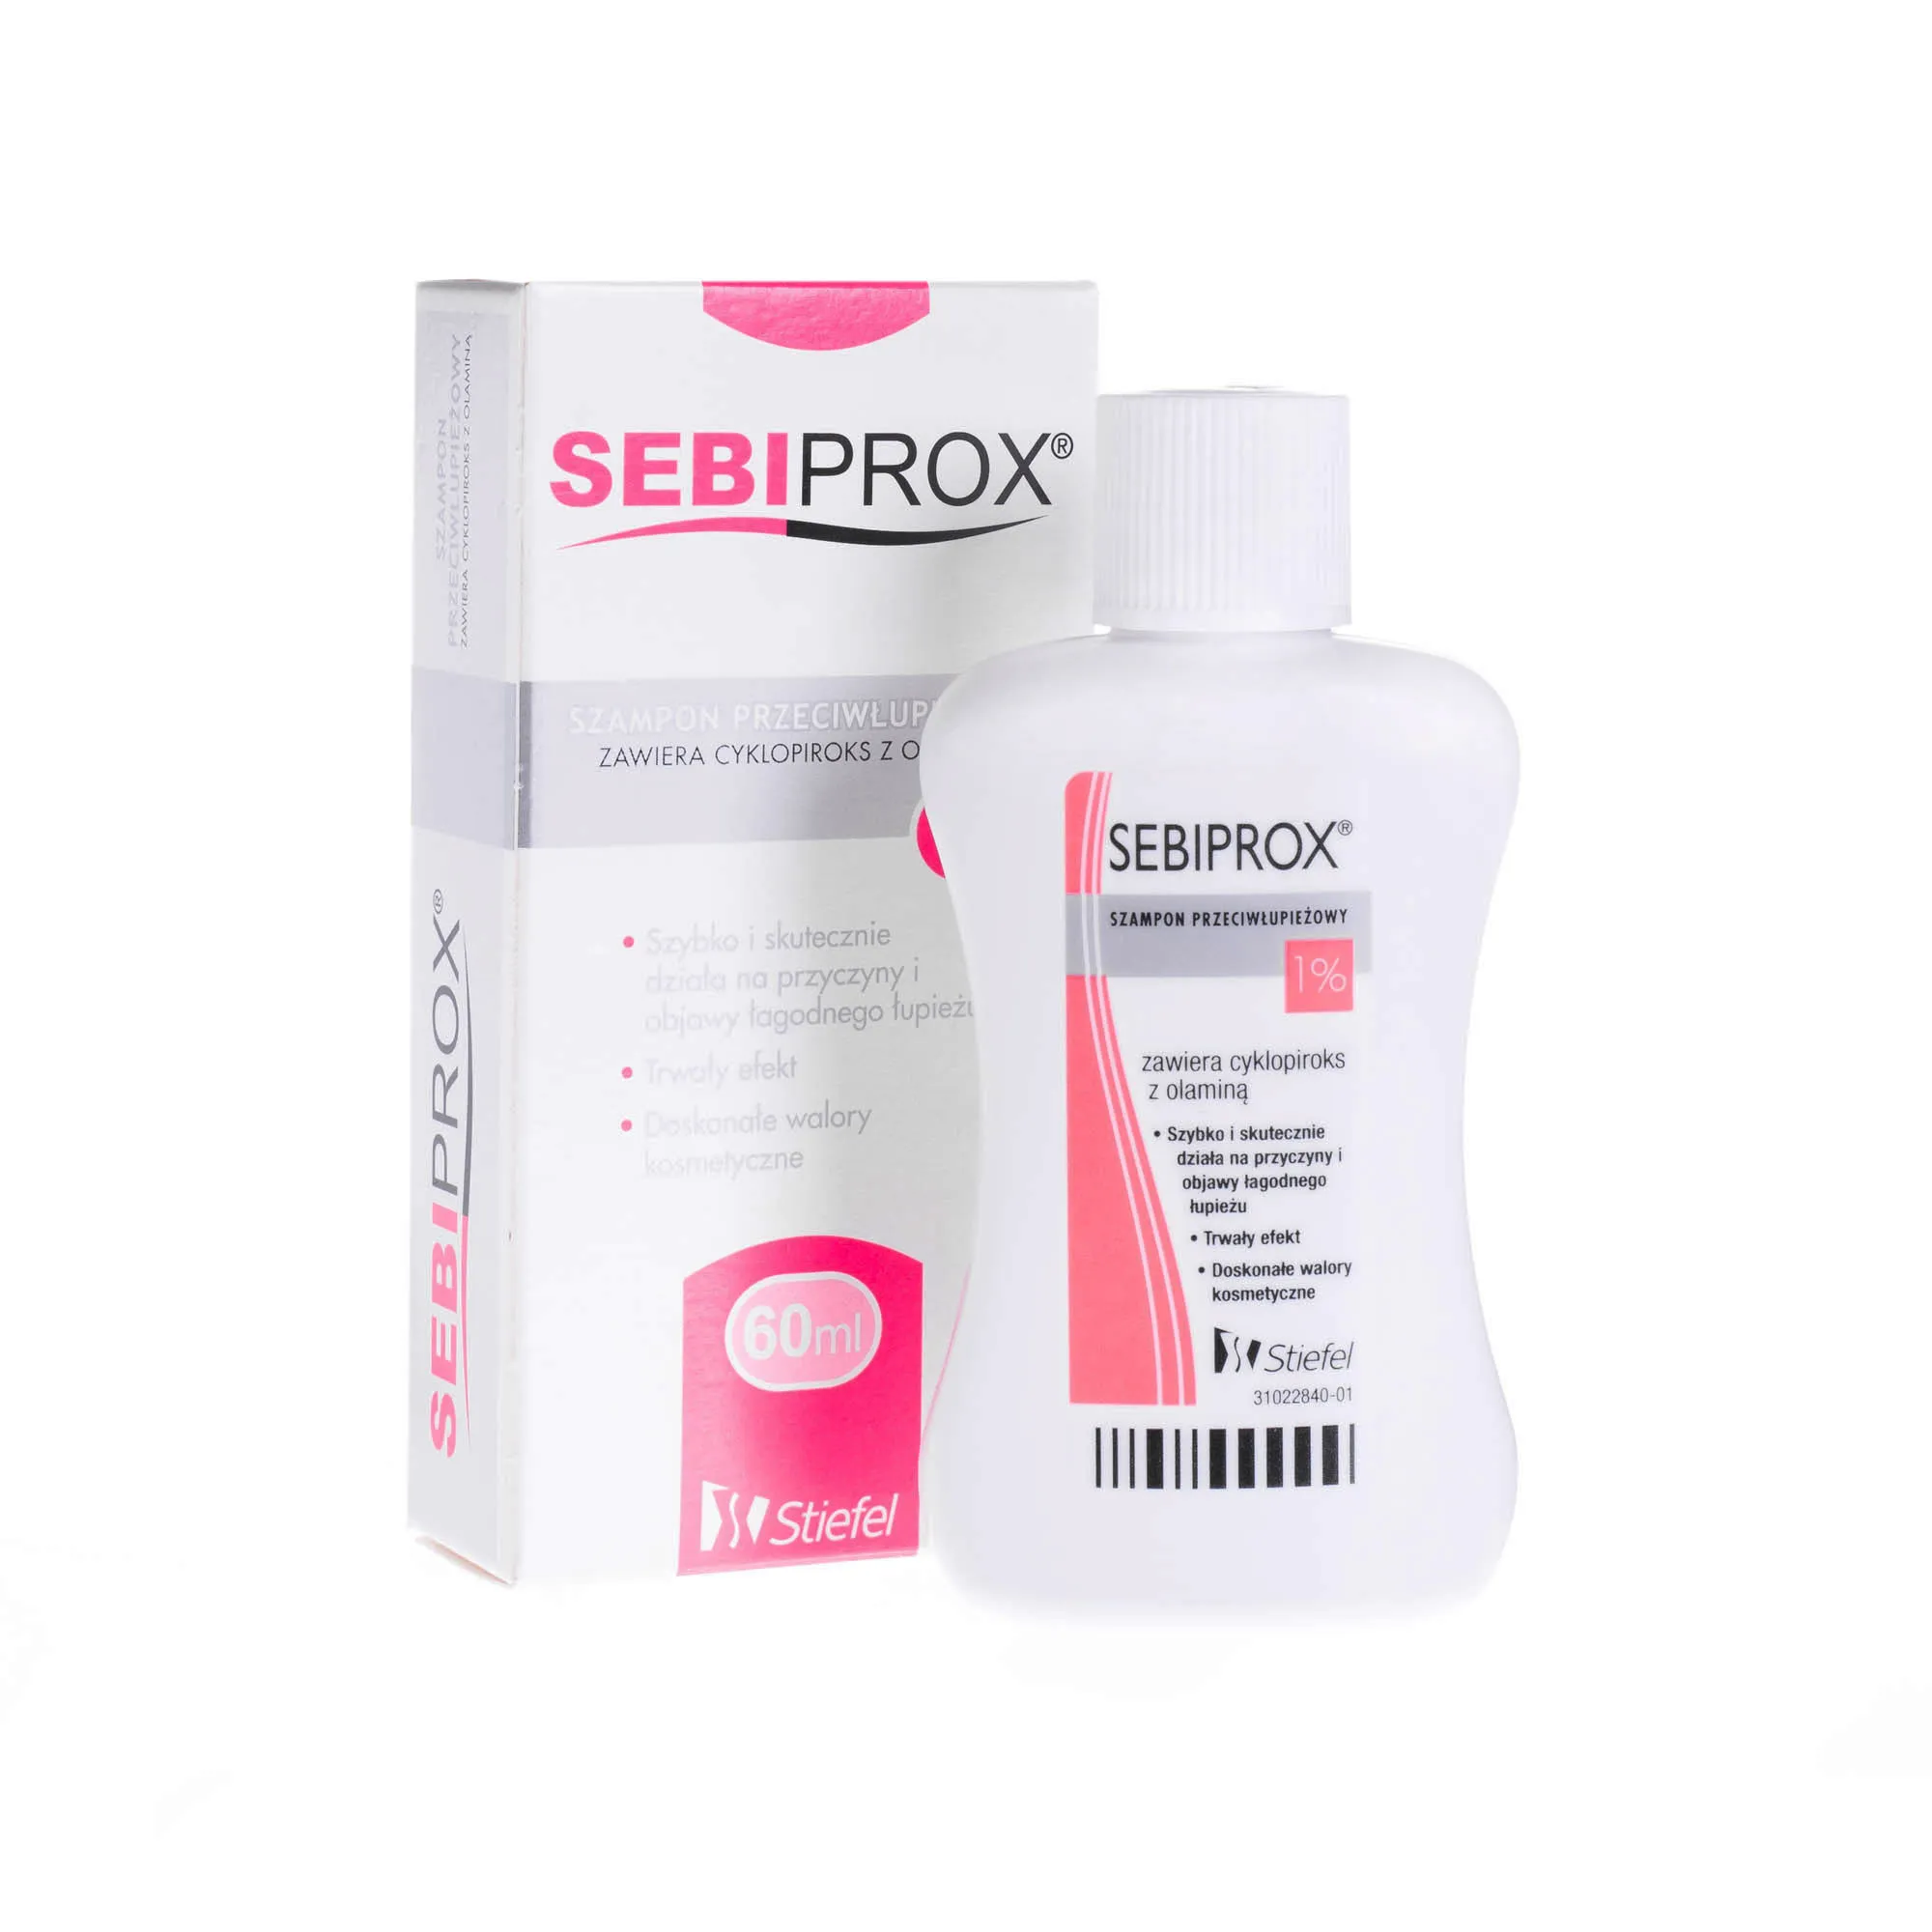 Sebiprox Szampon przeciwłupieżowy, 1%, 60 ml 